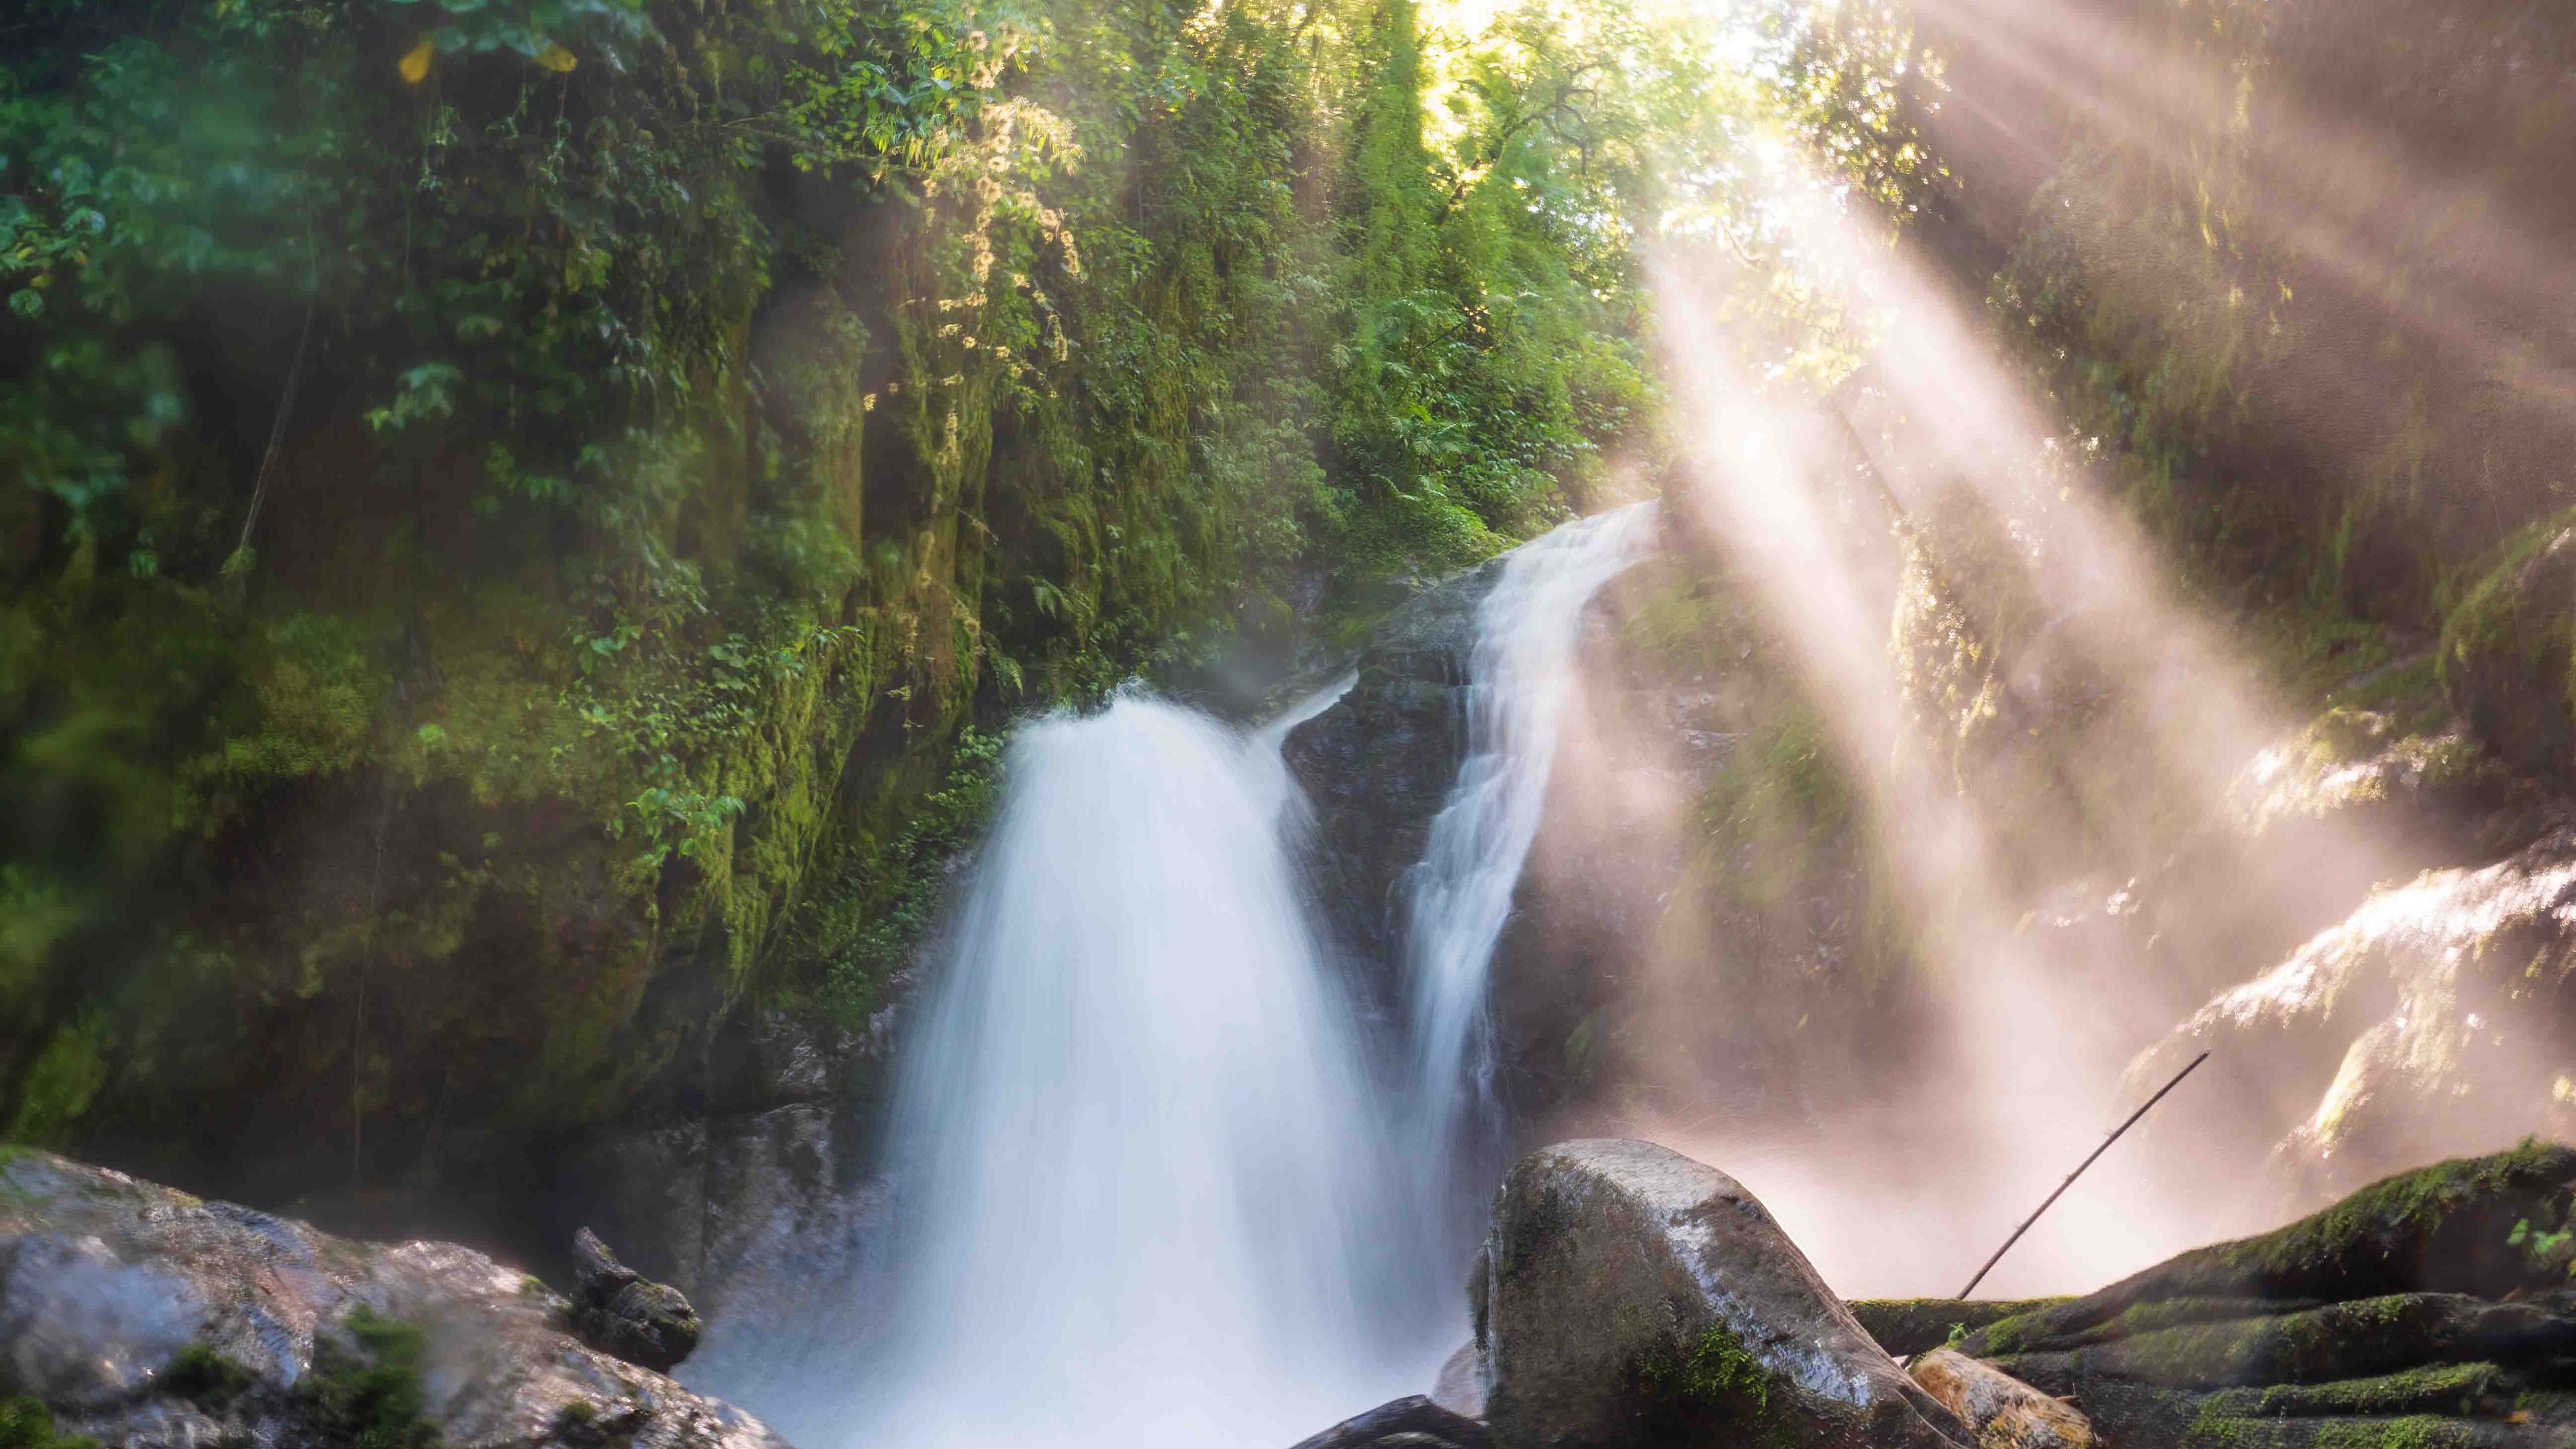 Zu sehen ist ein Wasserfall aus dem neotropischen Wald in Costa Rica. Aufnahme aus niedrigem Winkel lässt den Wasserfall mächtig wirken und fängt die Sonnenstrahlen, die durch den dicht bewachsenen Wald fallen, ein.